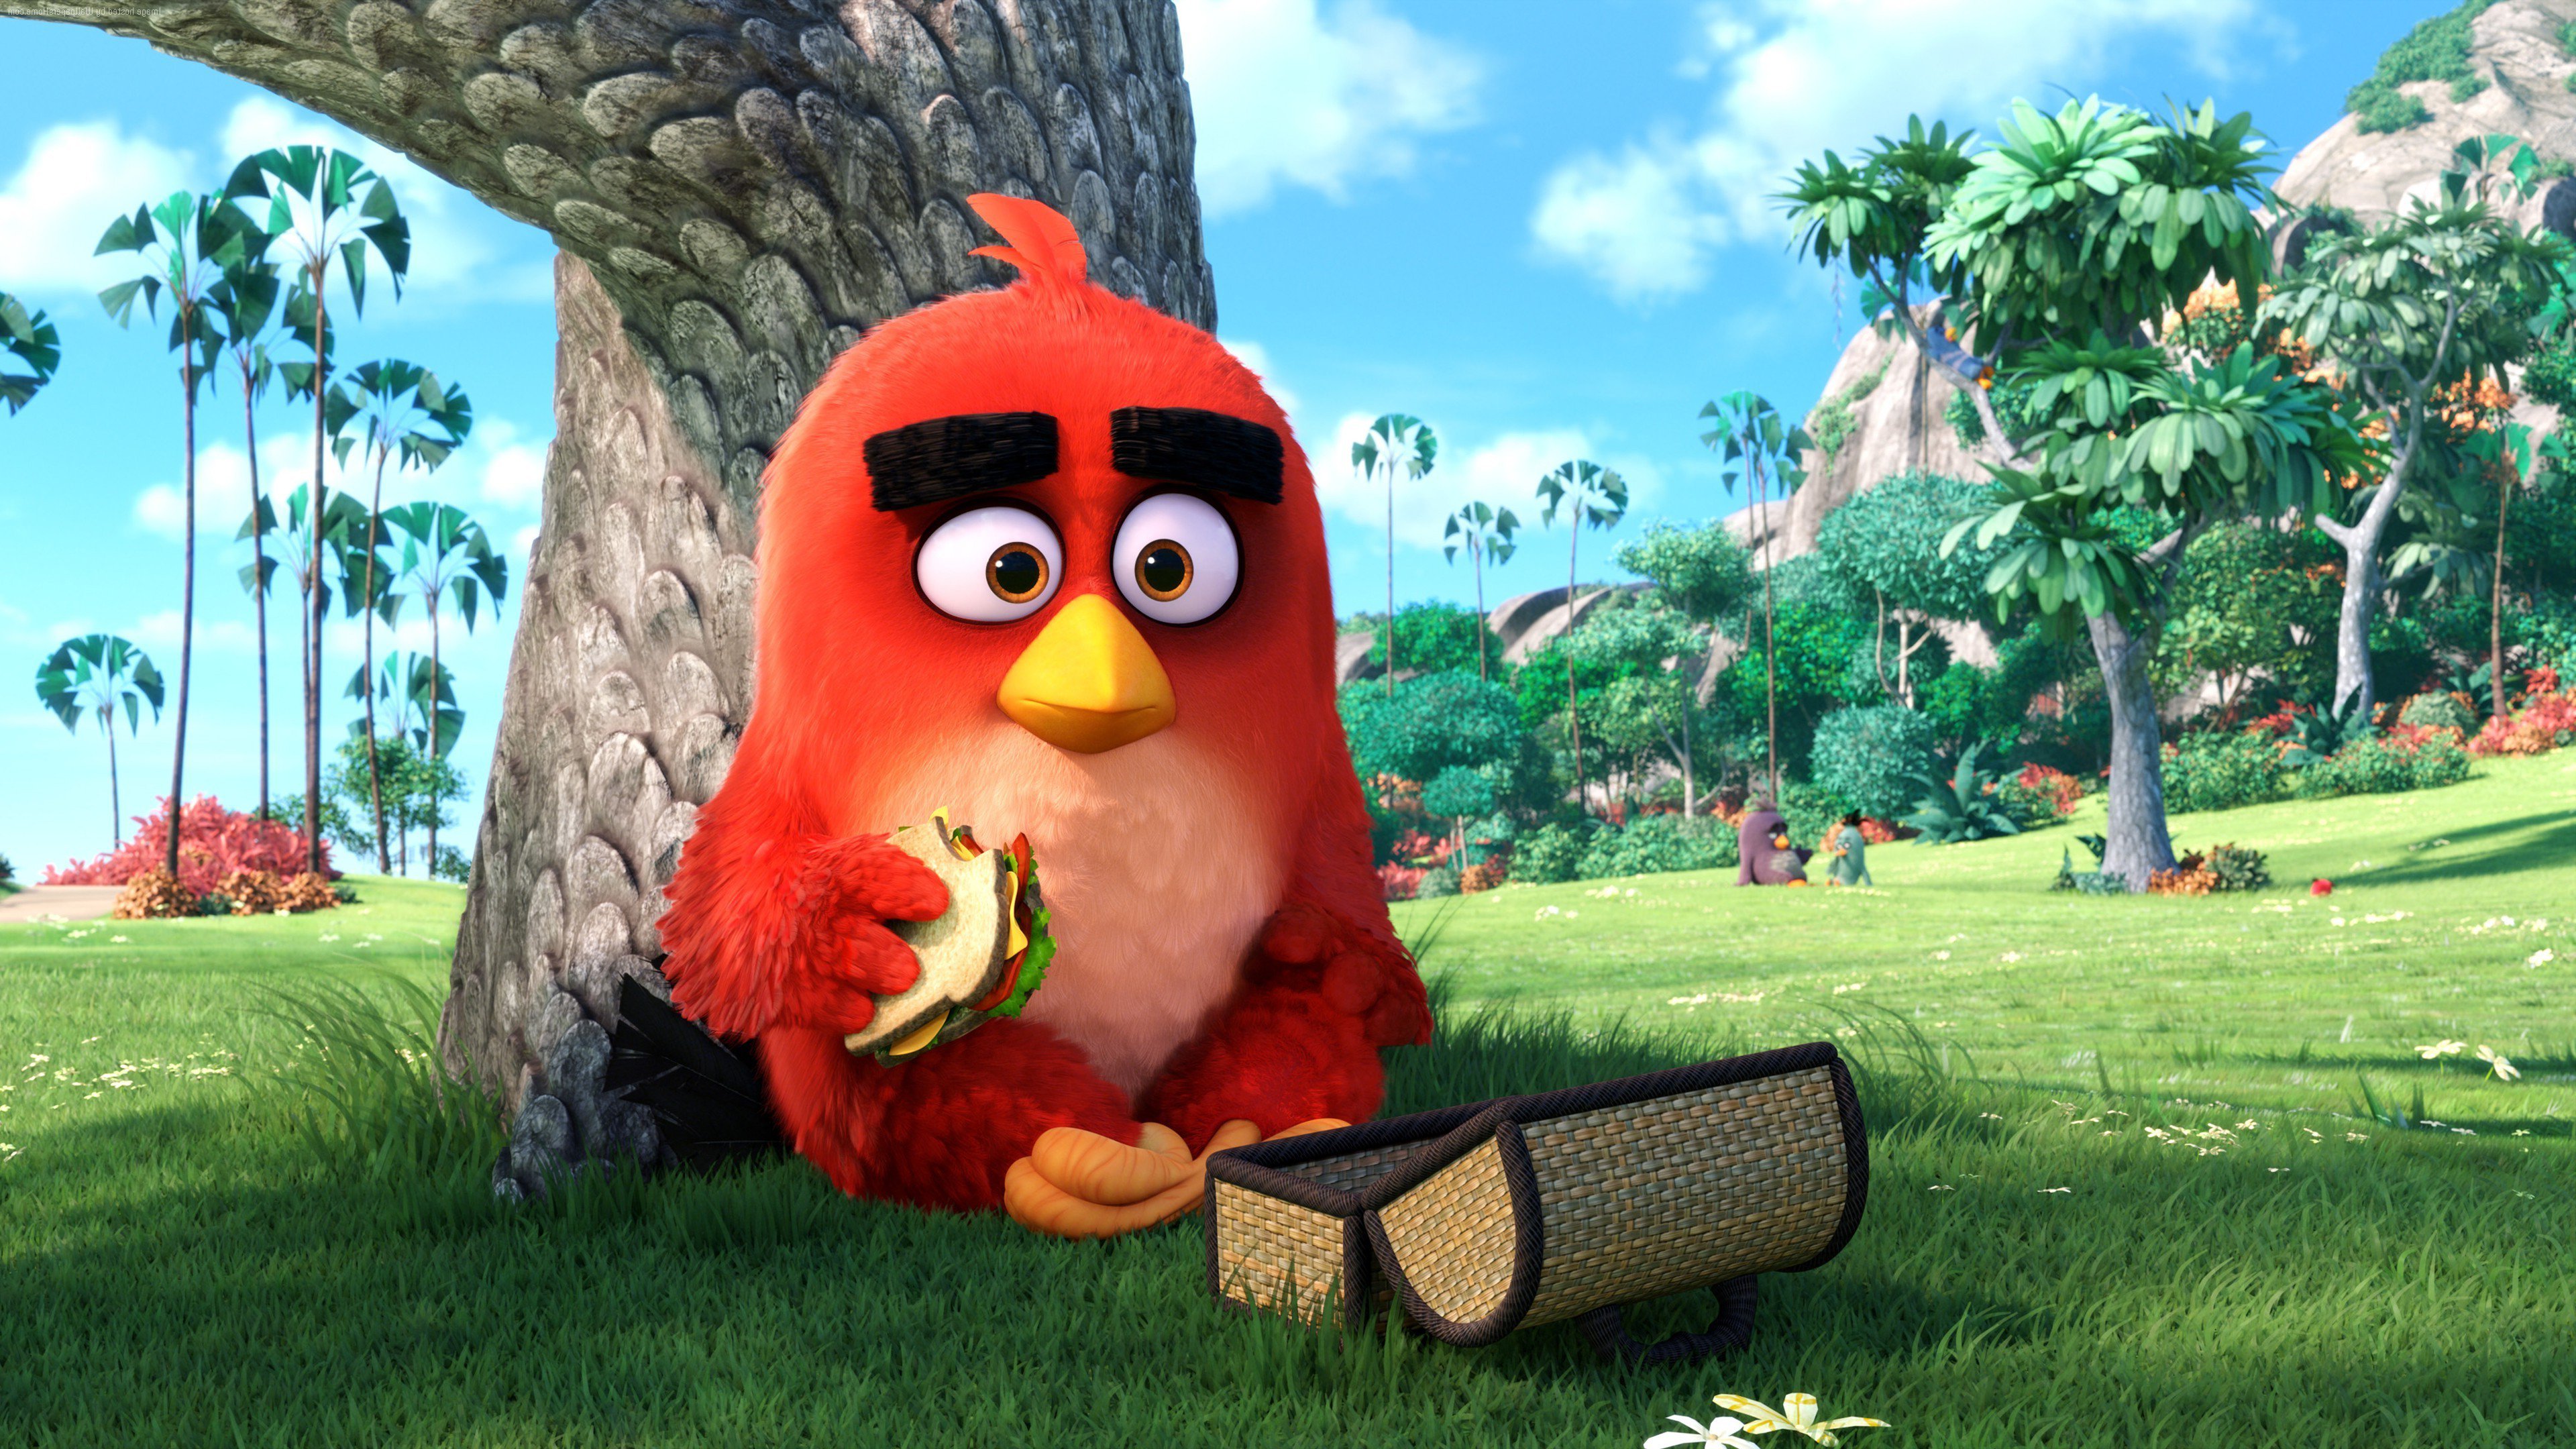 SEGA slutför förvärvet av Rovio Entertainment, utvecklare av den berömda mobilspelserien "Angry Birds"